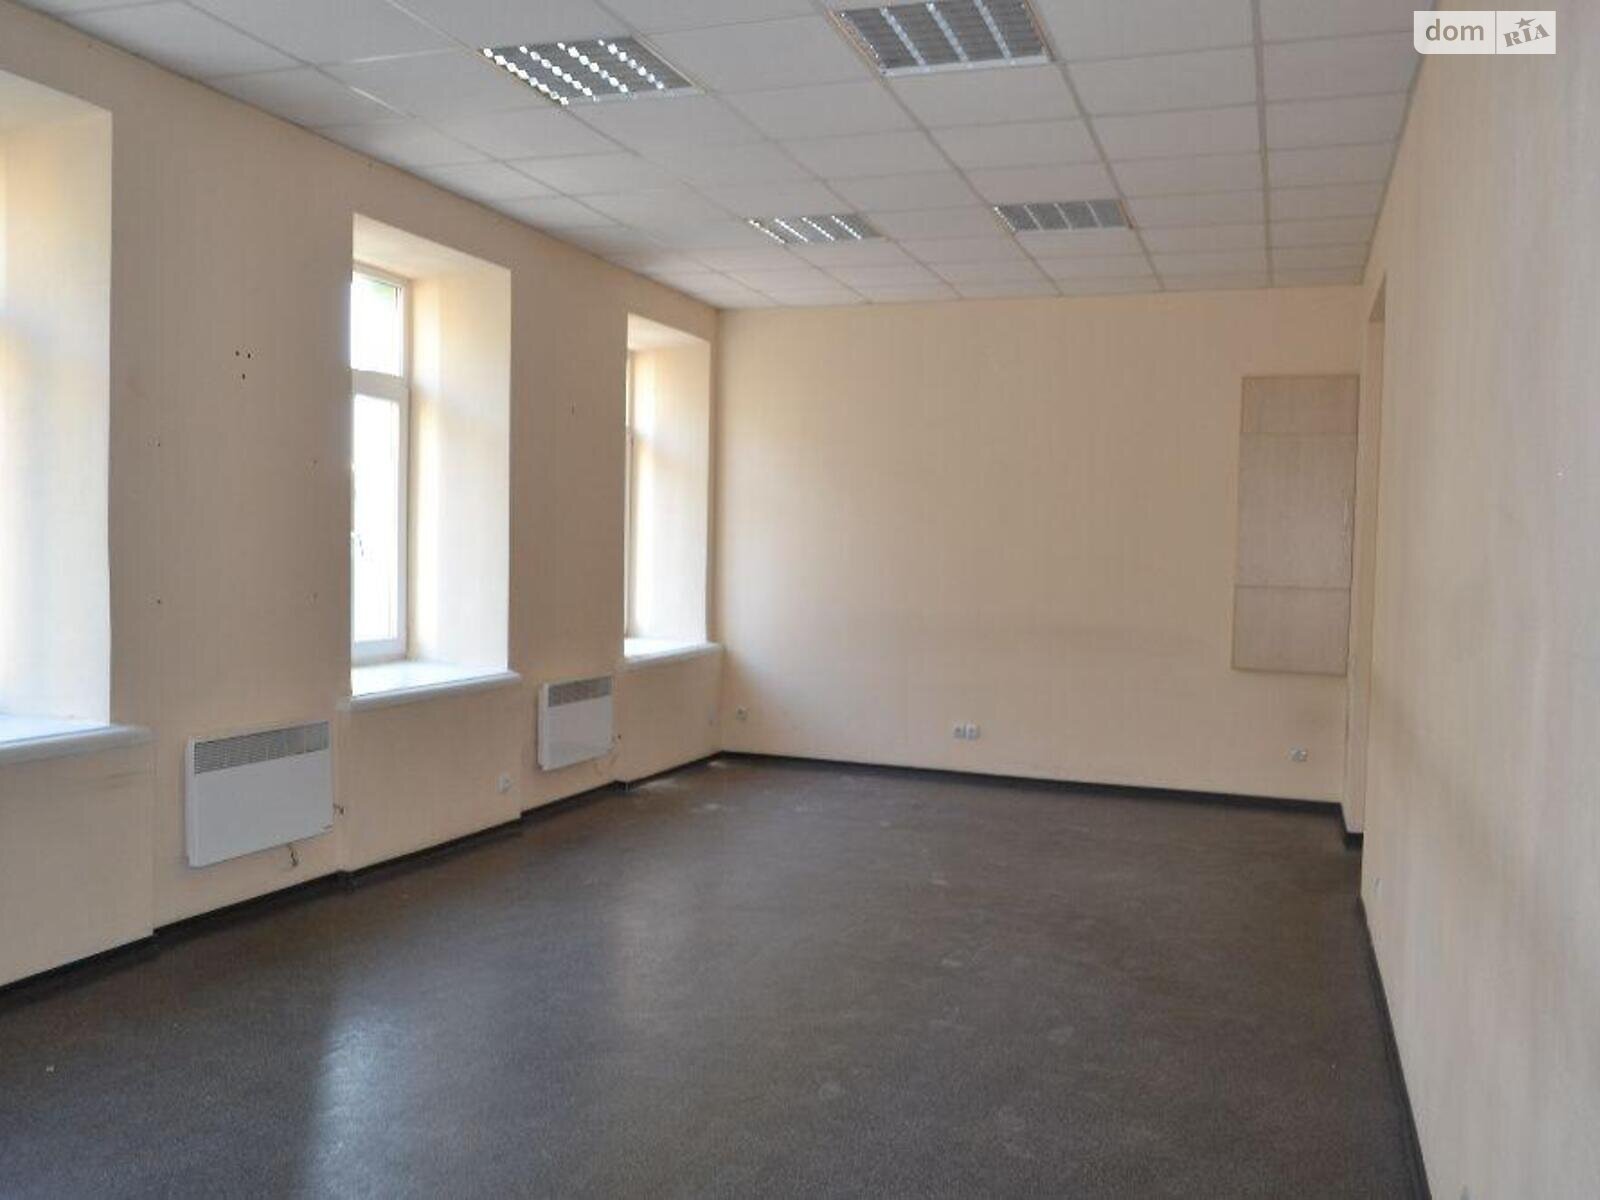 Офисное помещение на 386 кв.м. в Харькове фото 1